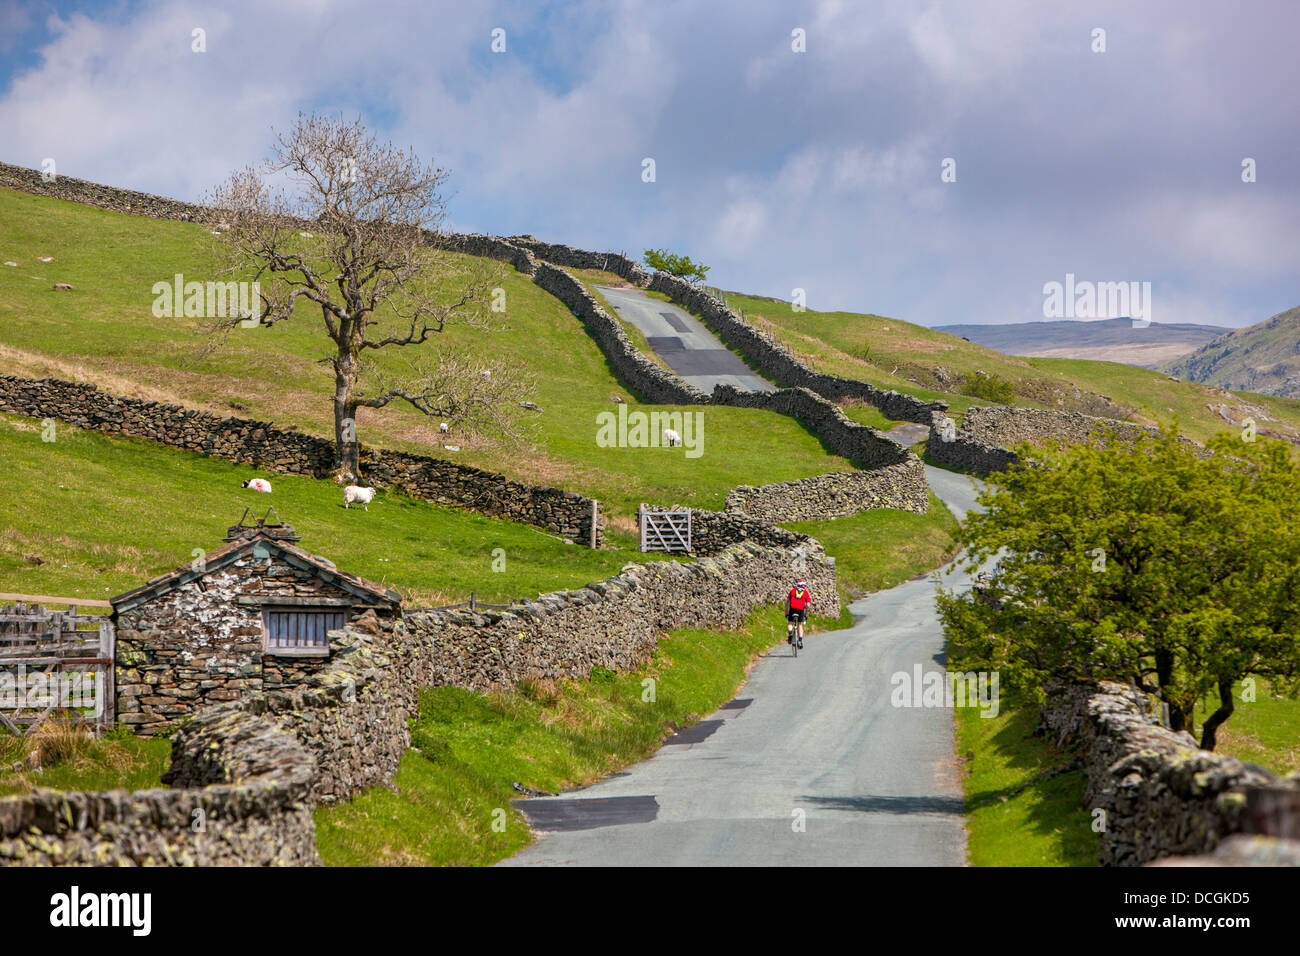 Kirkstone road, Parco Nazionale del Distretto dei Laghi, Cumbria, Regno Unito, Europa. Foto Stock